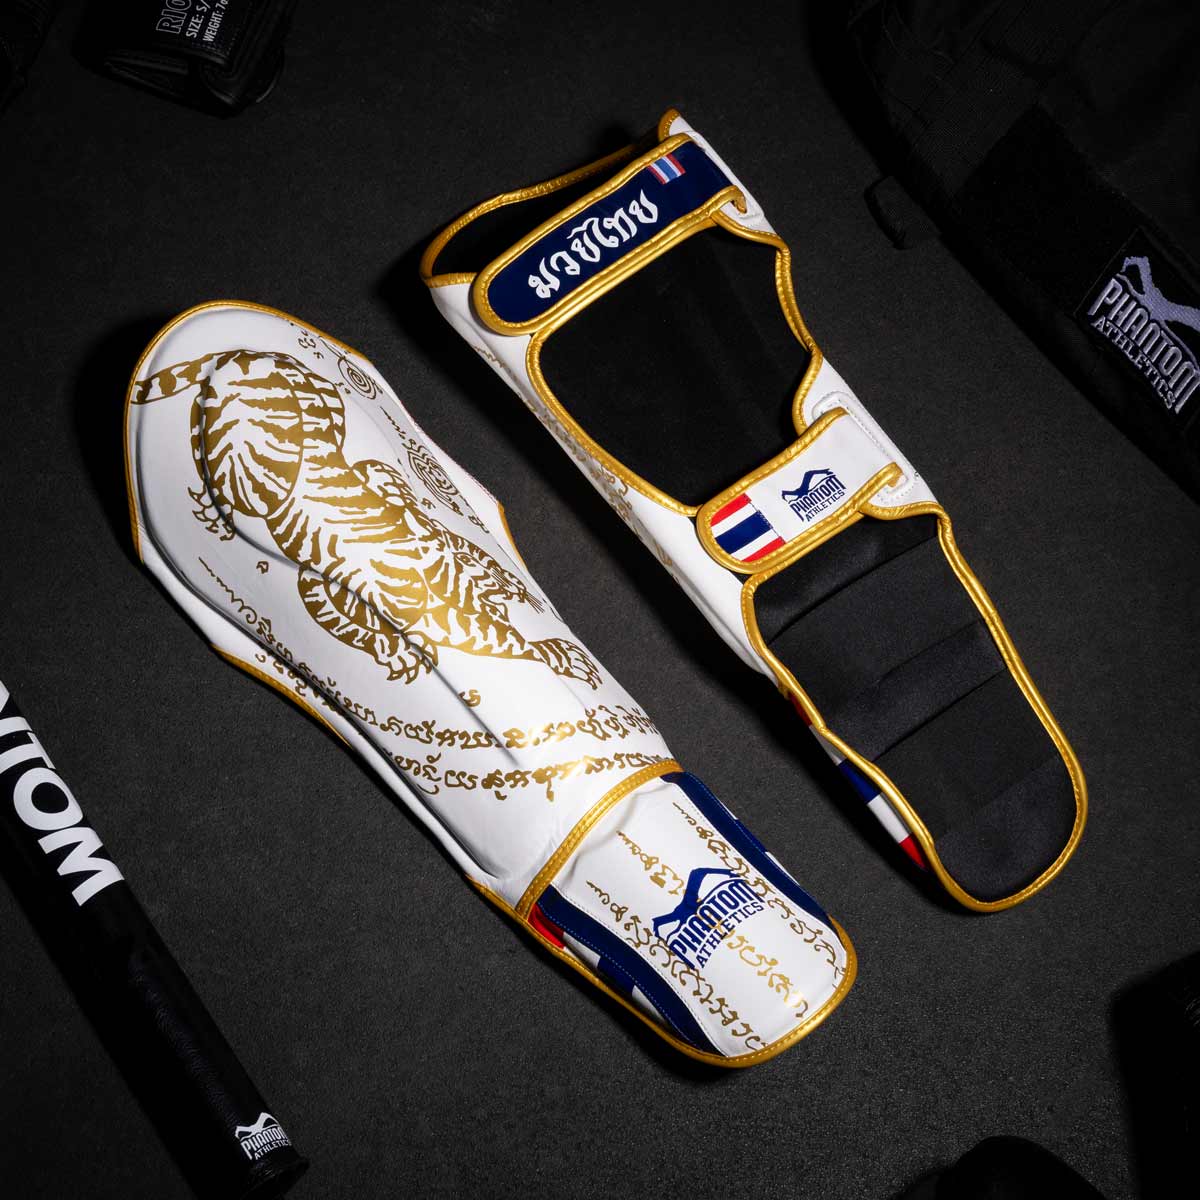 Phantom Muay Thai Schienbeinschutz für Thaiboxen und MMA Sparring, Wettkampf und Training. Im traditionellen Sak Yant Design und der limitierten Farbe Weiß/Gold.